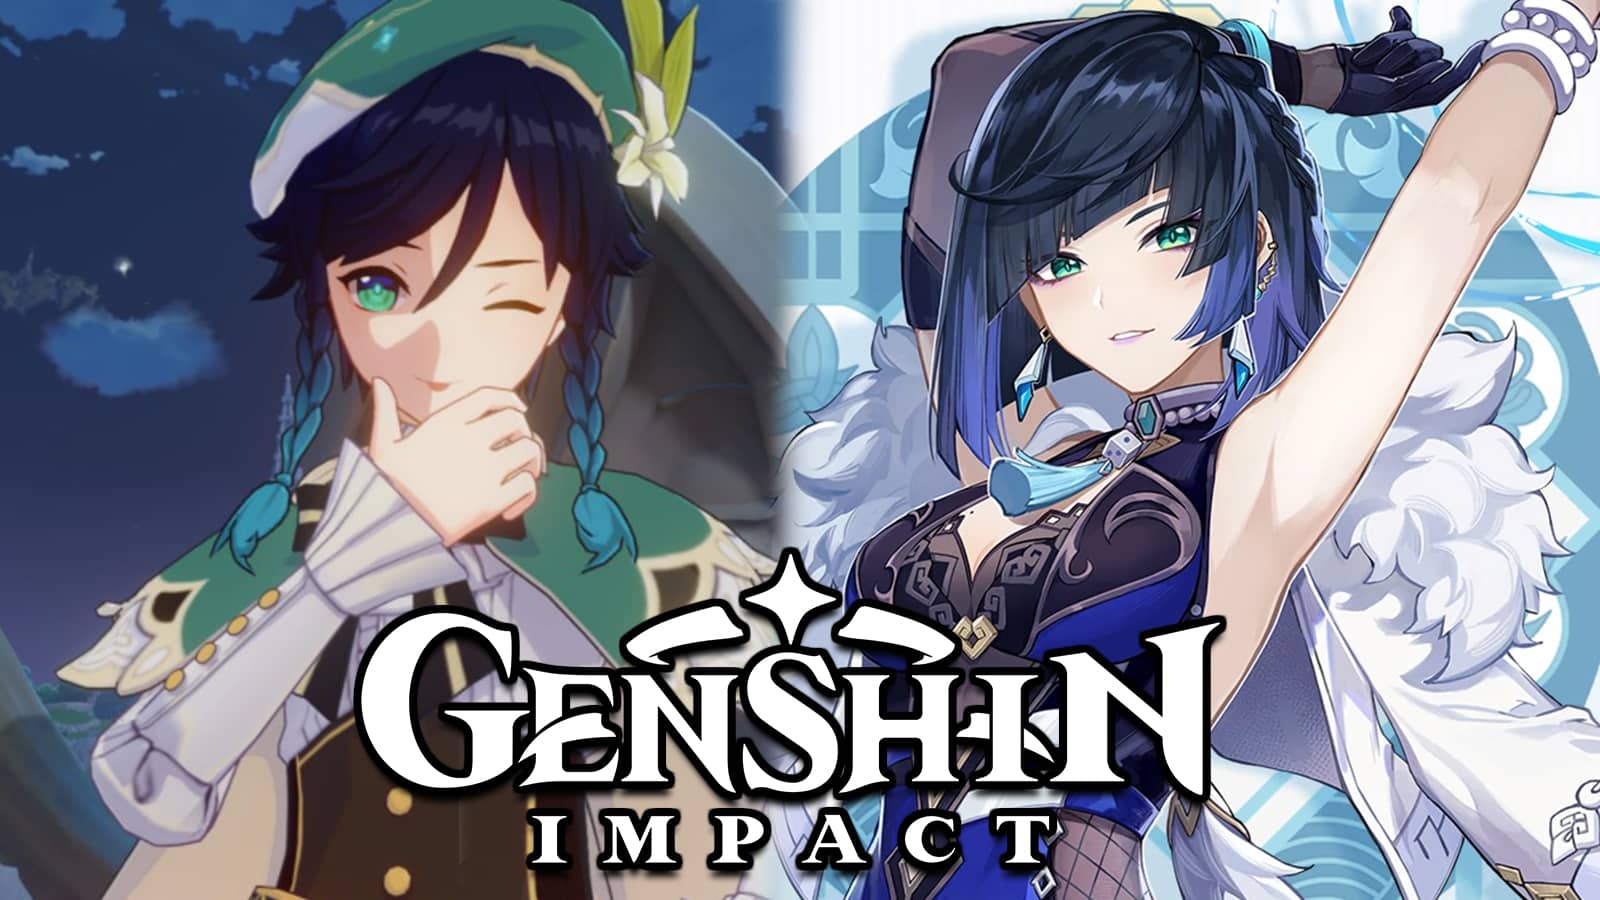 Genshin Impact Venti next to new character Yelan screenshot.